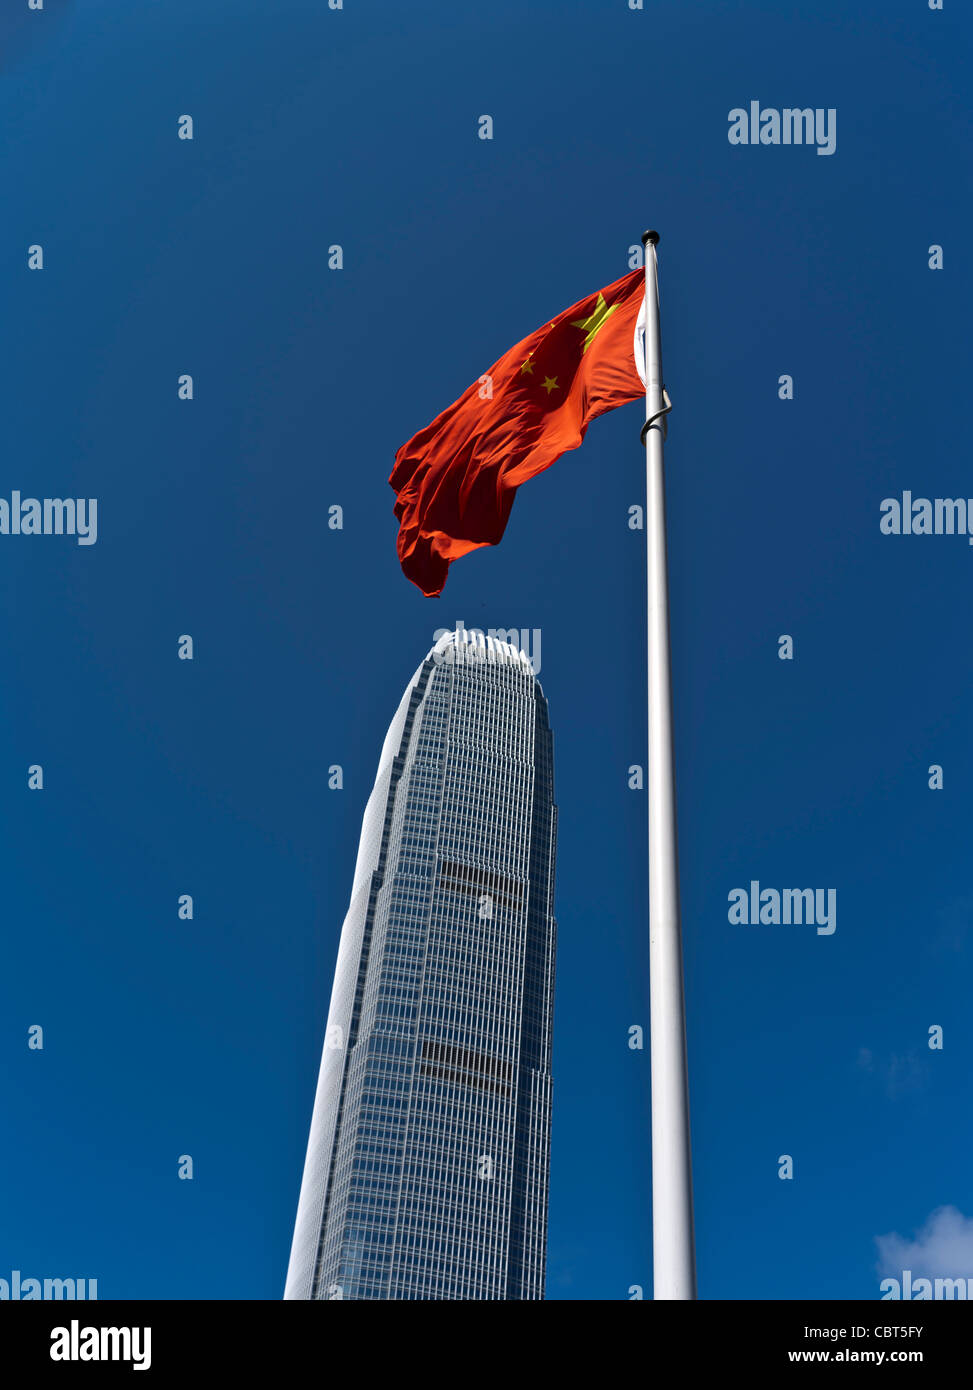 dh quartier financier international IFC 2 CENTRE HONG KONG CENTRAL Tour de gratte-ciel bâtissant le drapeau chinois volant la chine Banque D'Images